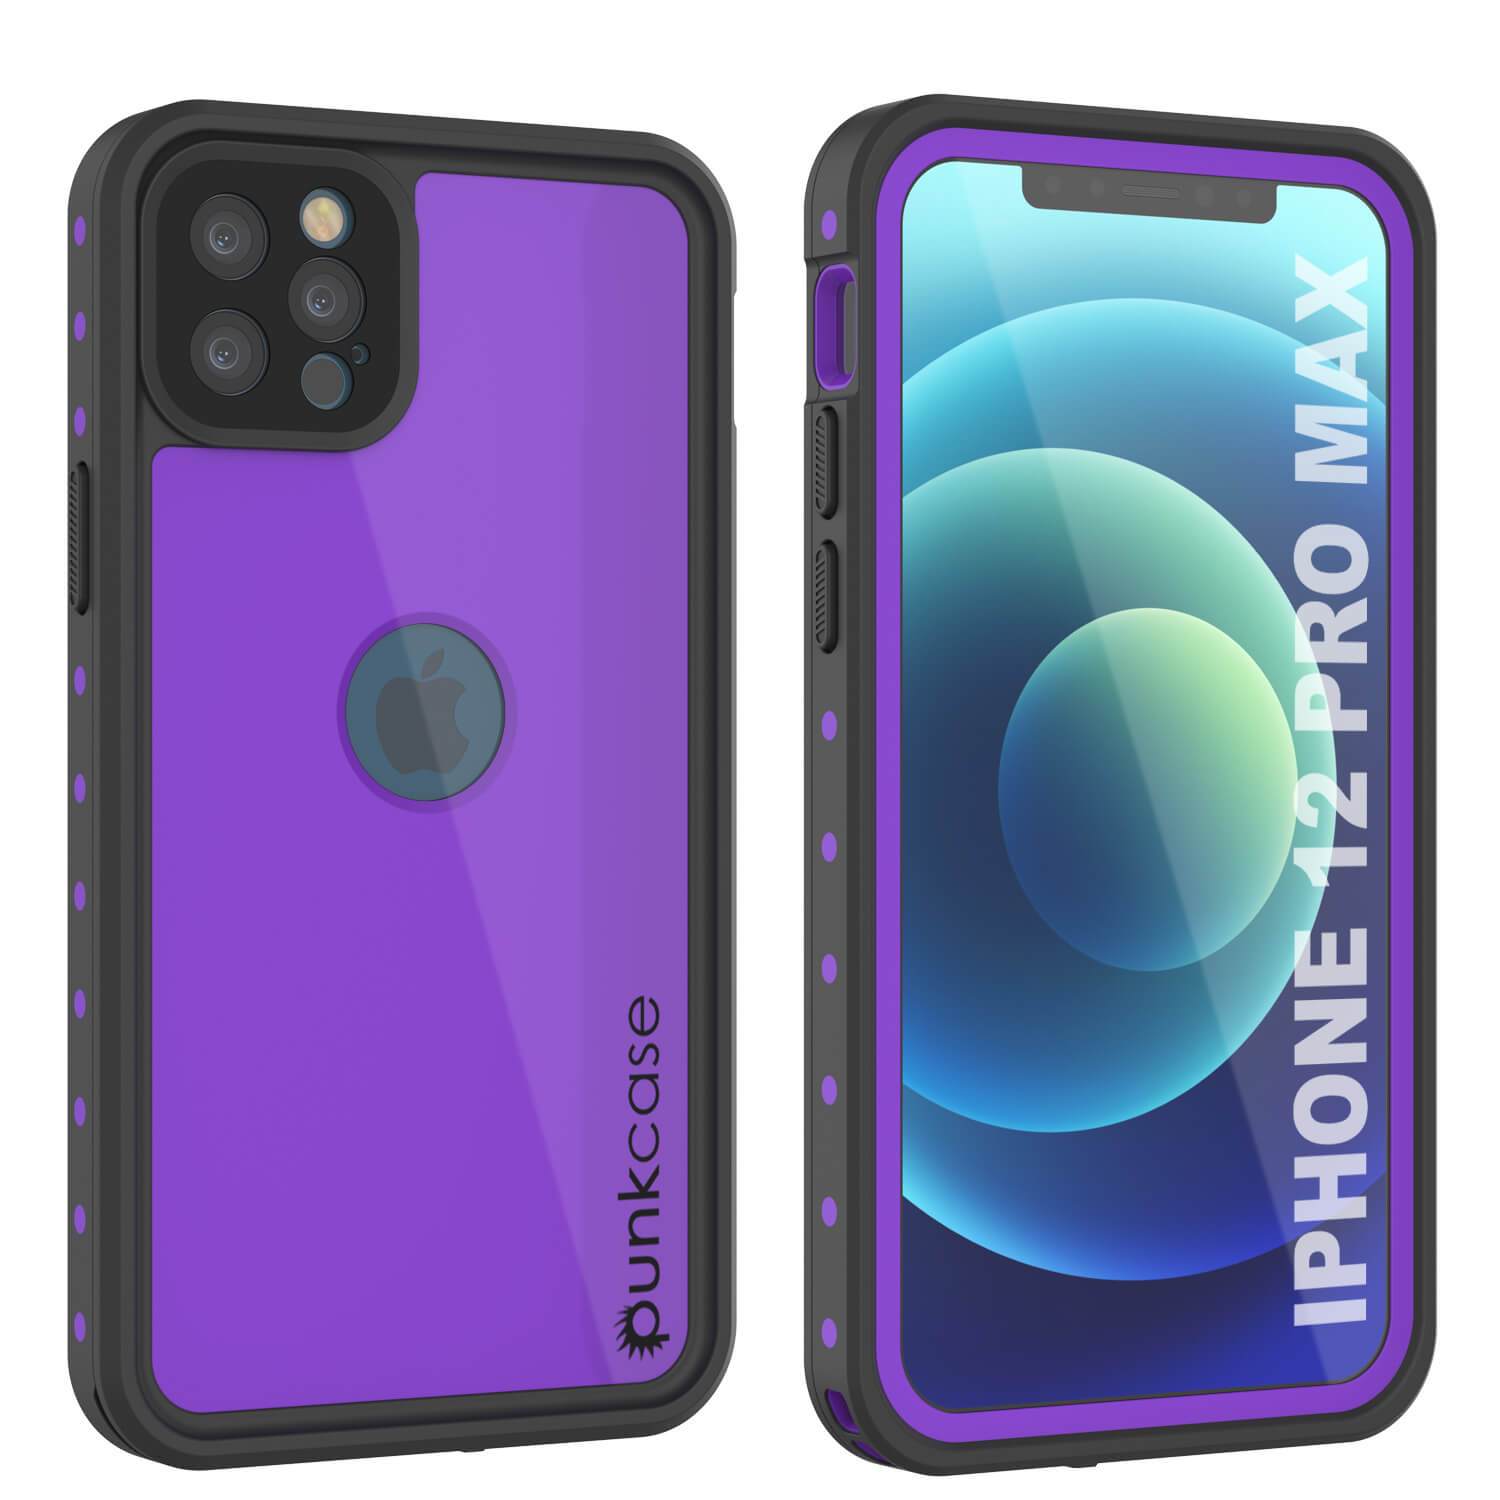 iPhone 12 Pro Max Waterproof IP68 Case, Punkcase [Purple] [StudStar Series] [Slim Fit] [Dirtproof] (Color in image: Purple)